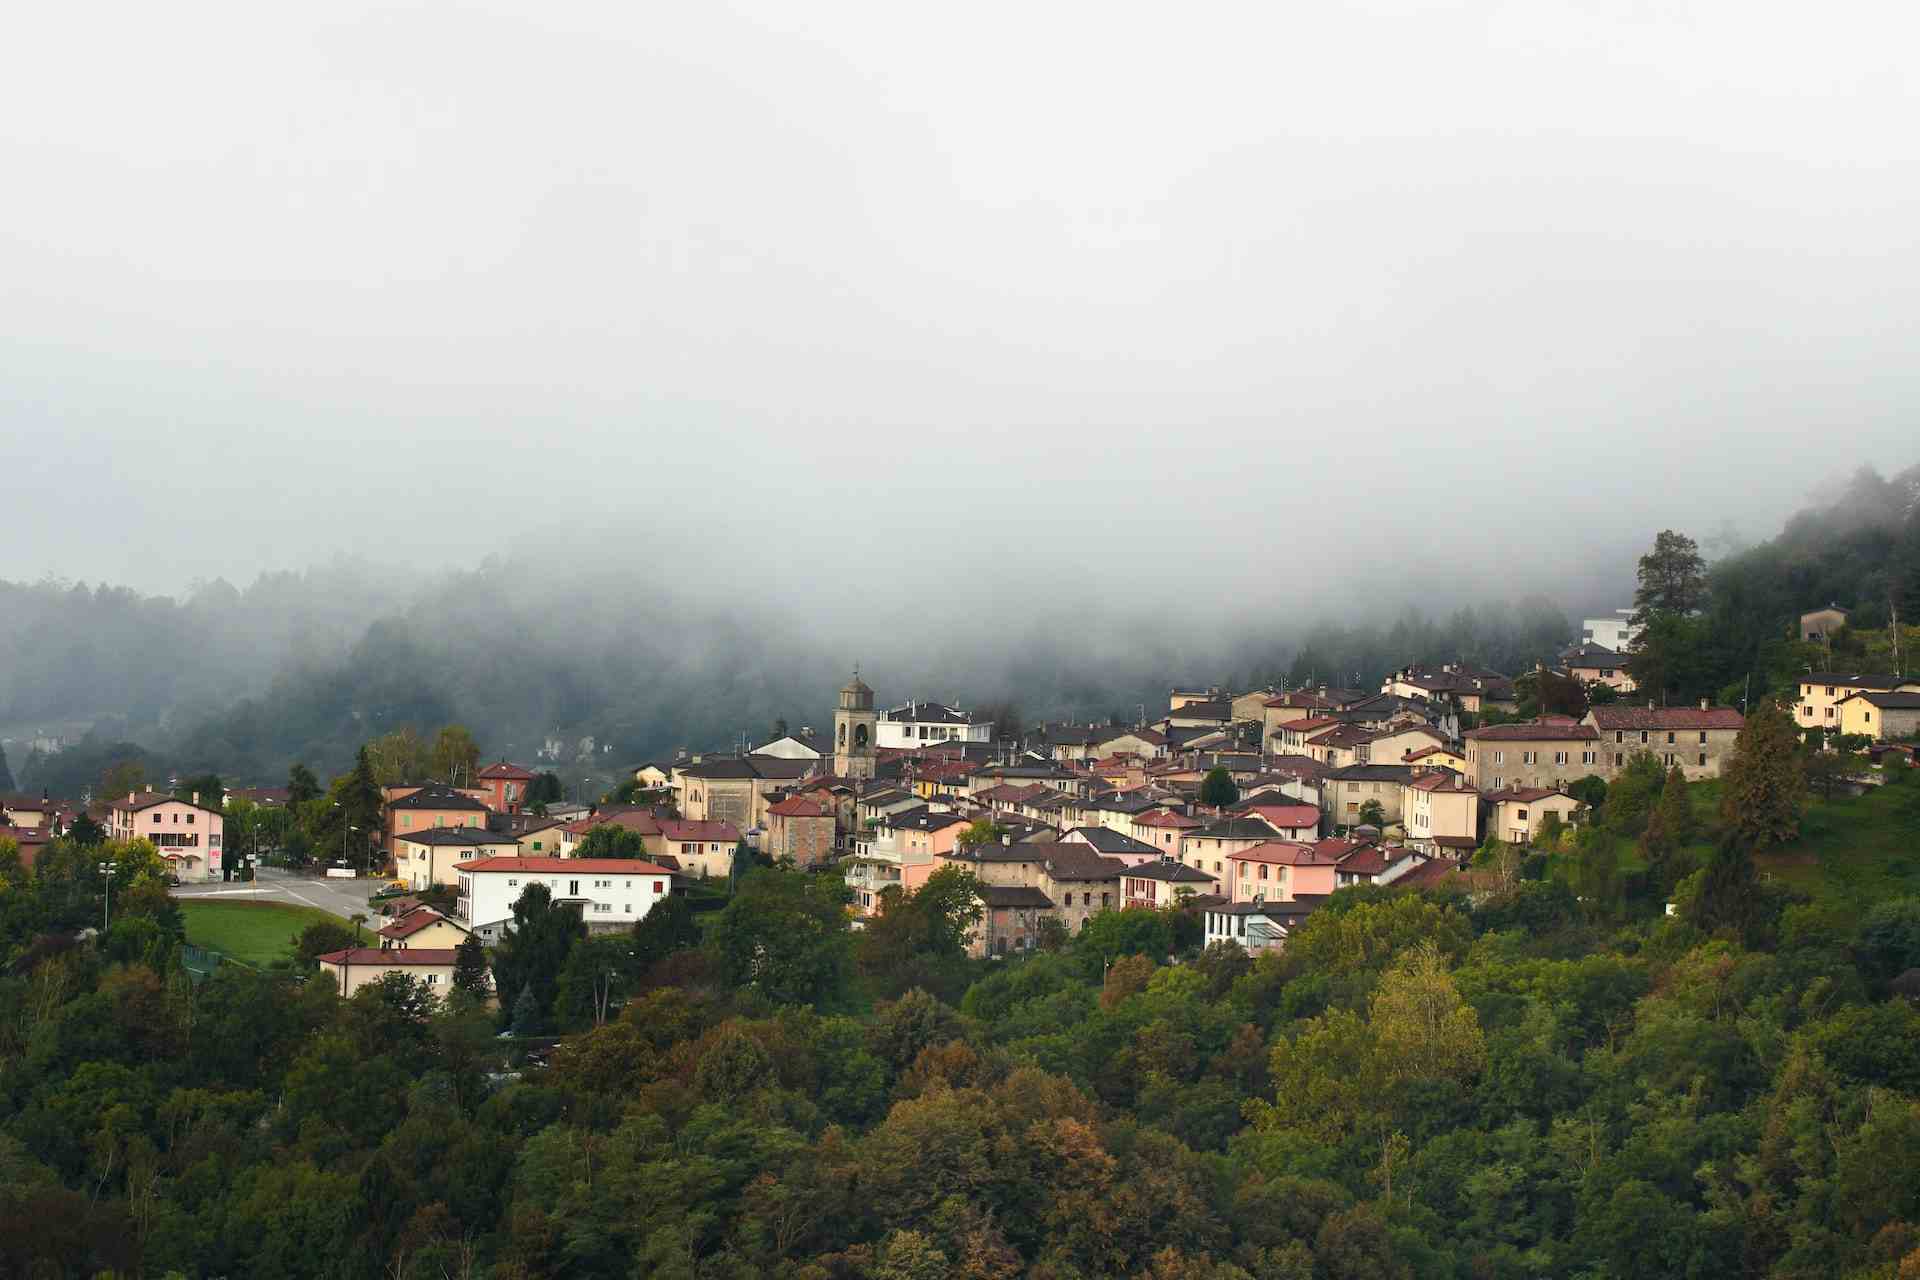 Azienda Agricola Laveggio, producer in Genestrerio canton of Ticino in Switzerland